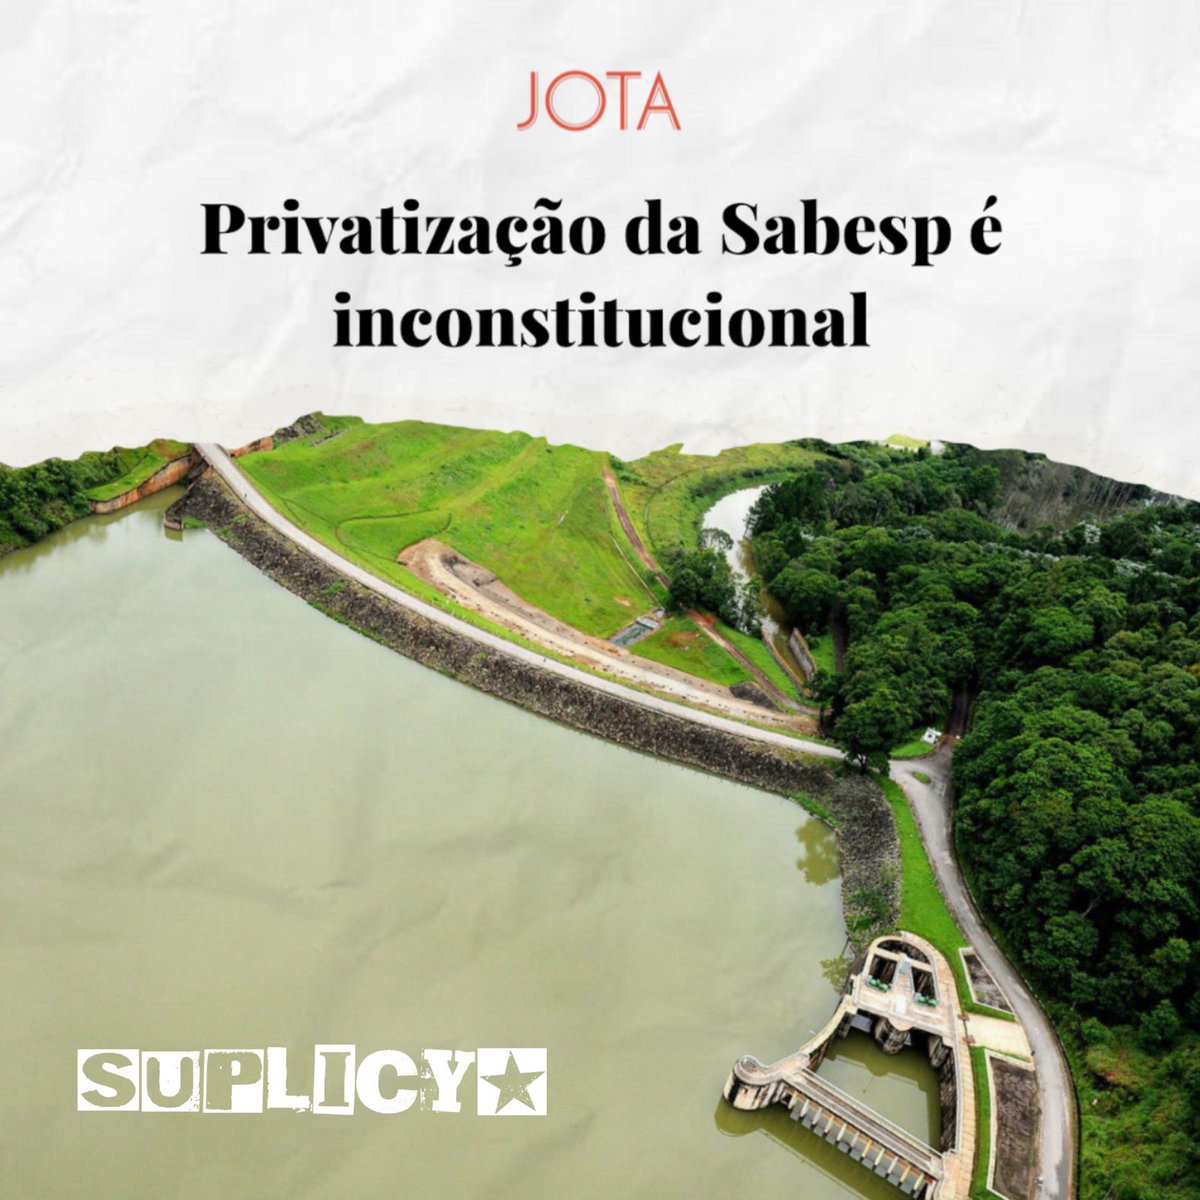 Recomendo o artigo de Rubens Naves e Guilherme Amorim Campos da Silva, publicado pelo @JotaInfo, explica a inconstitucionalidade da proposta de privatização da @sabesp. Além disso, o Ministério Público recomenda a suspensão da votação devido a arbitrariedades na proposta, +